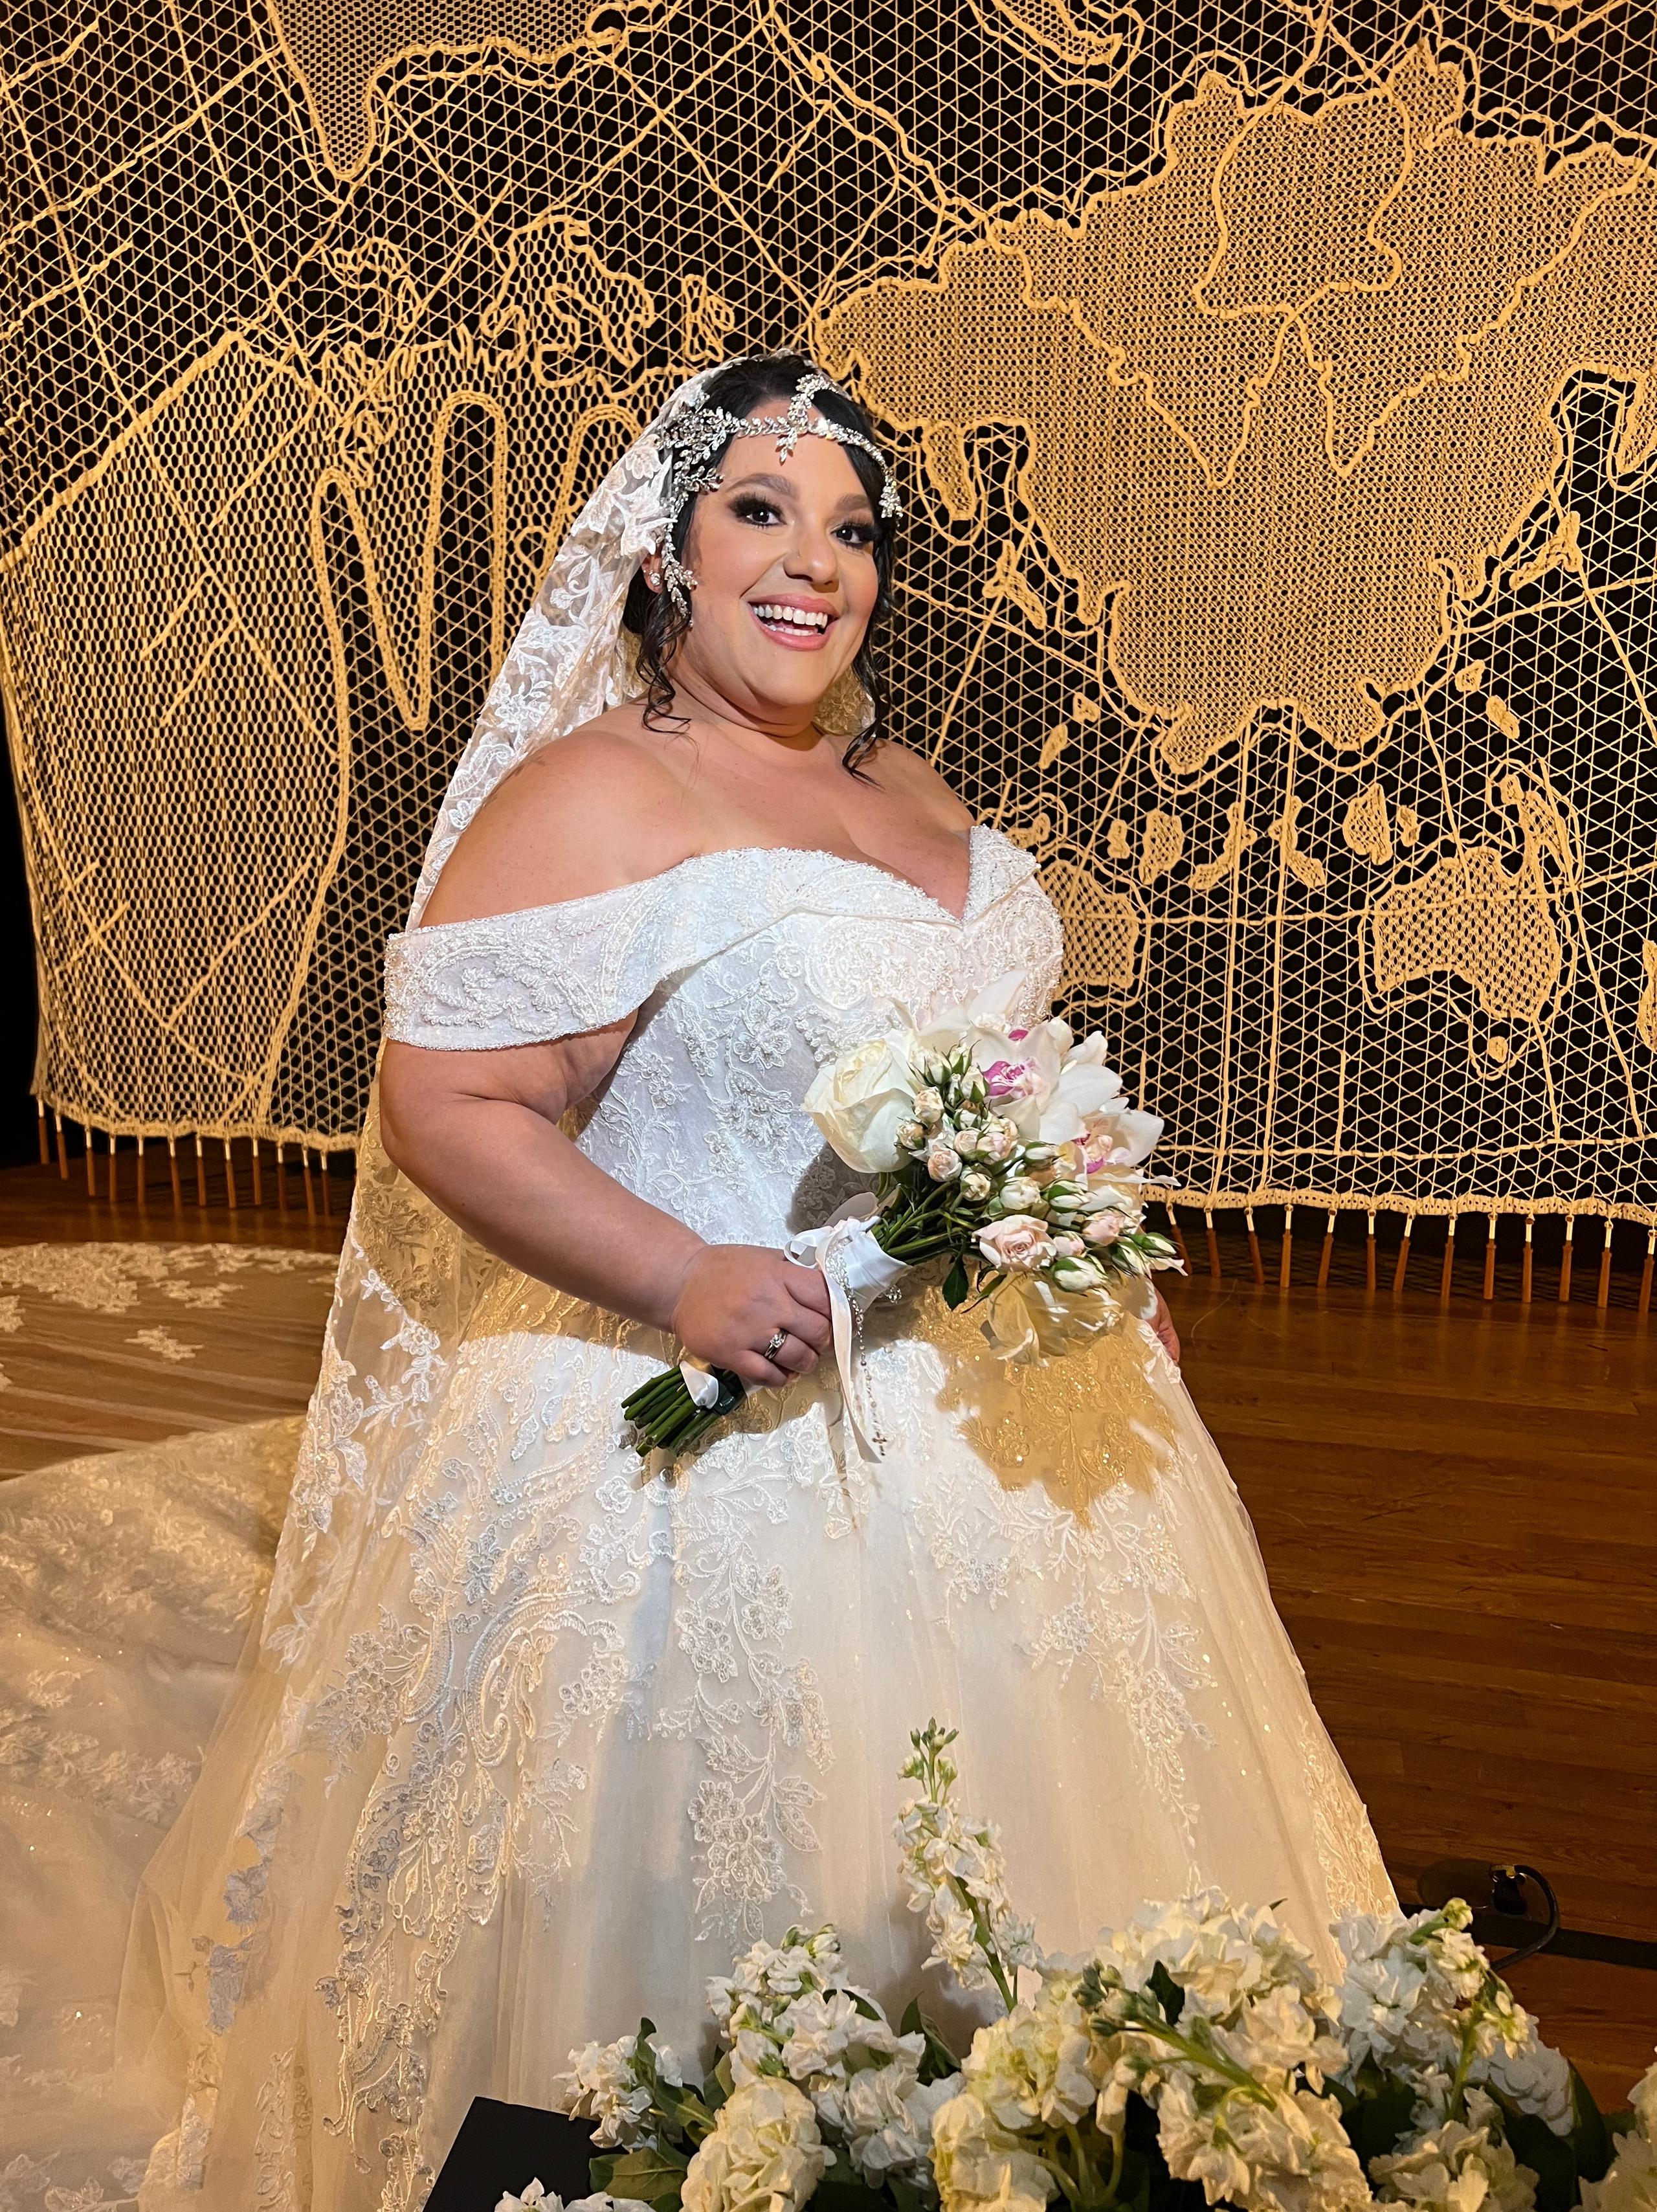 Norwill Fragoso entró al Teatro Raúl Juliá del Museo de Arte de Puerto Rico en un etéreo vestido blanco de D'Royal Bride.